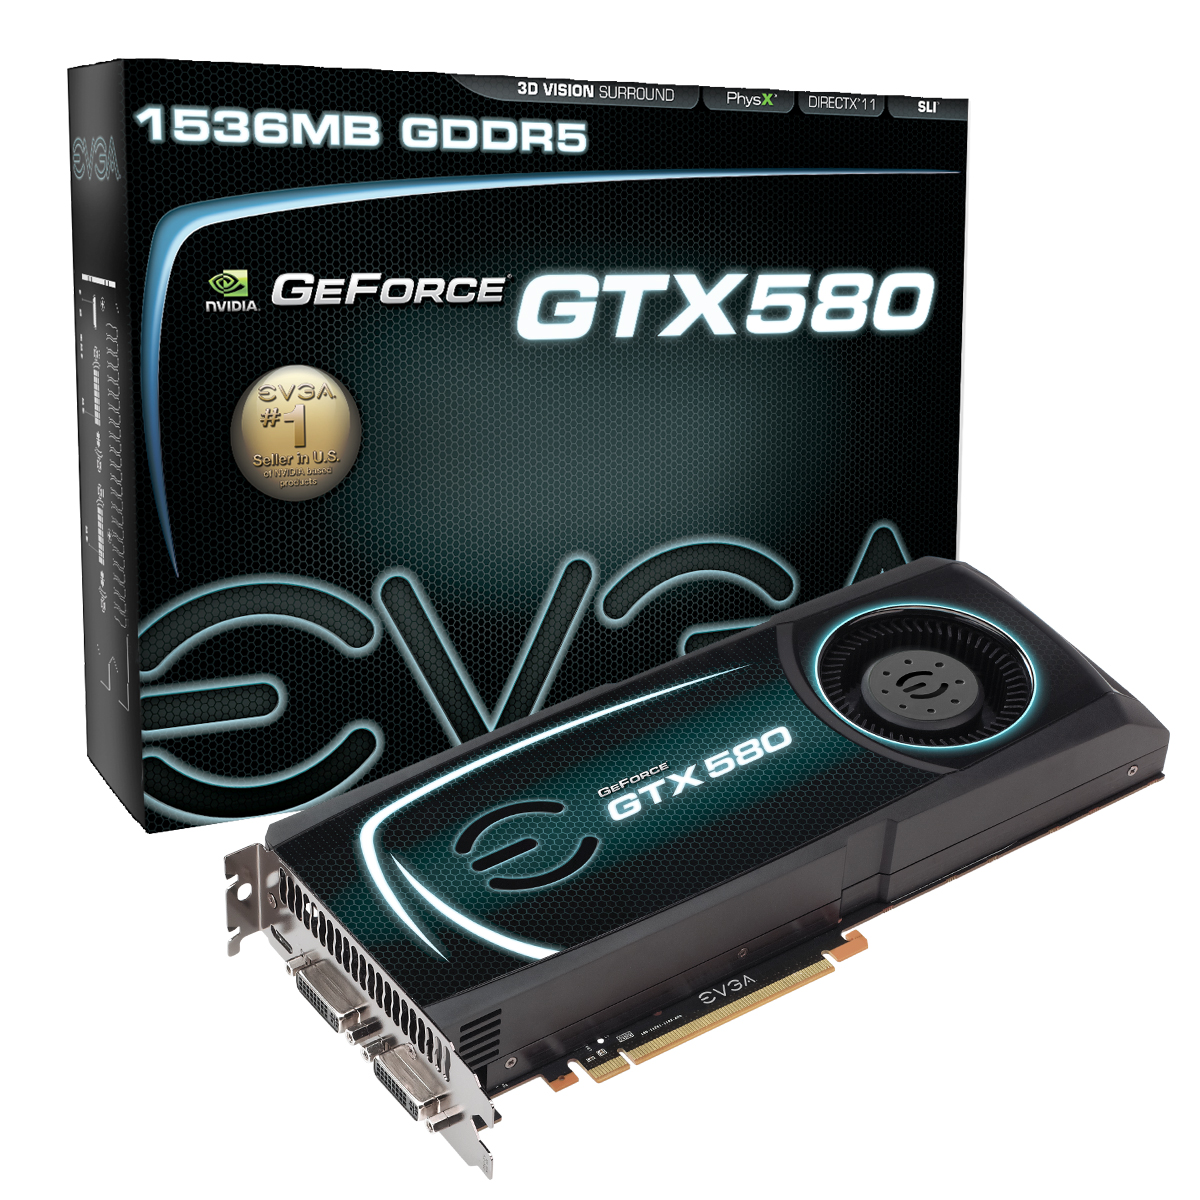 Nvidia gtx 580